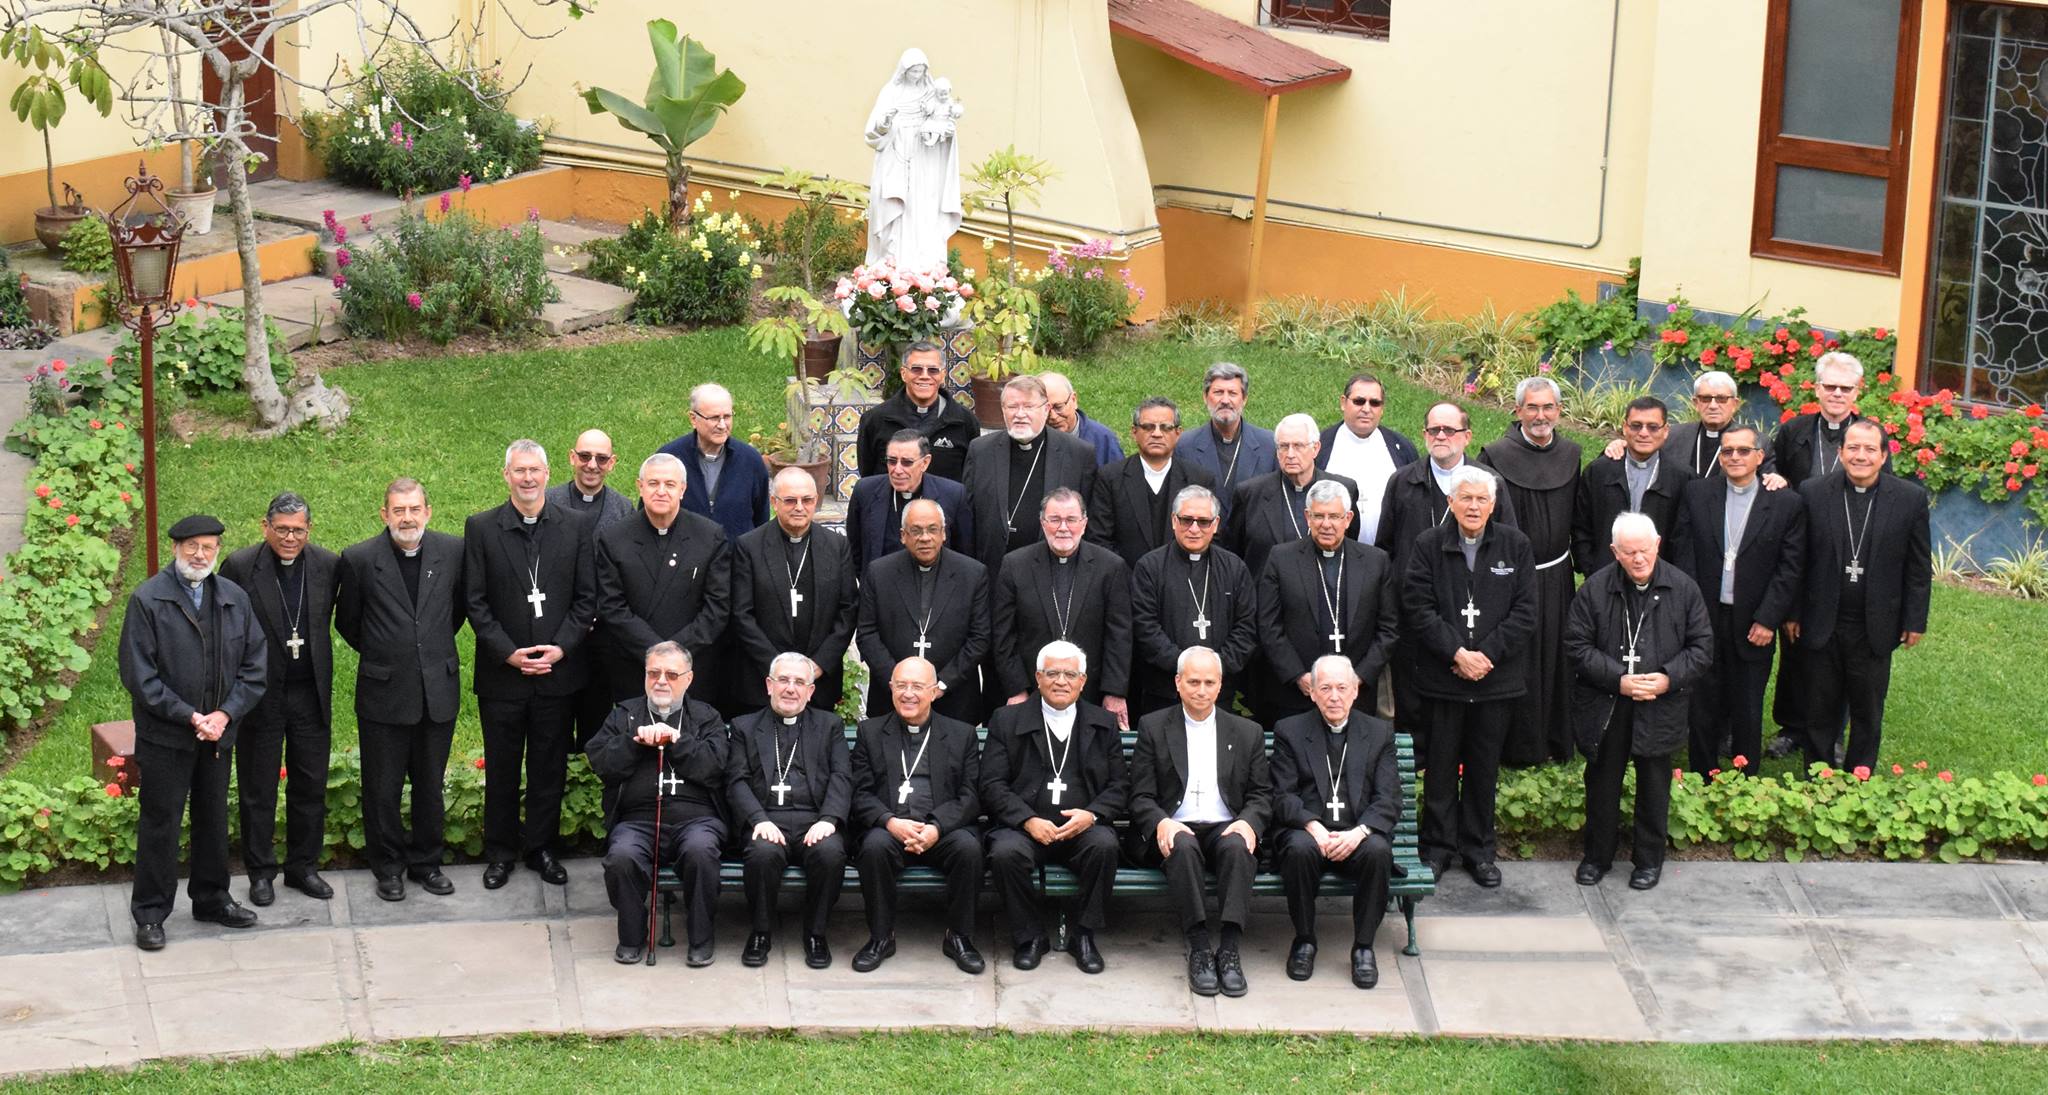 Obispos del Perú © Conferencia Episcopal Peruana